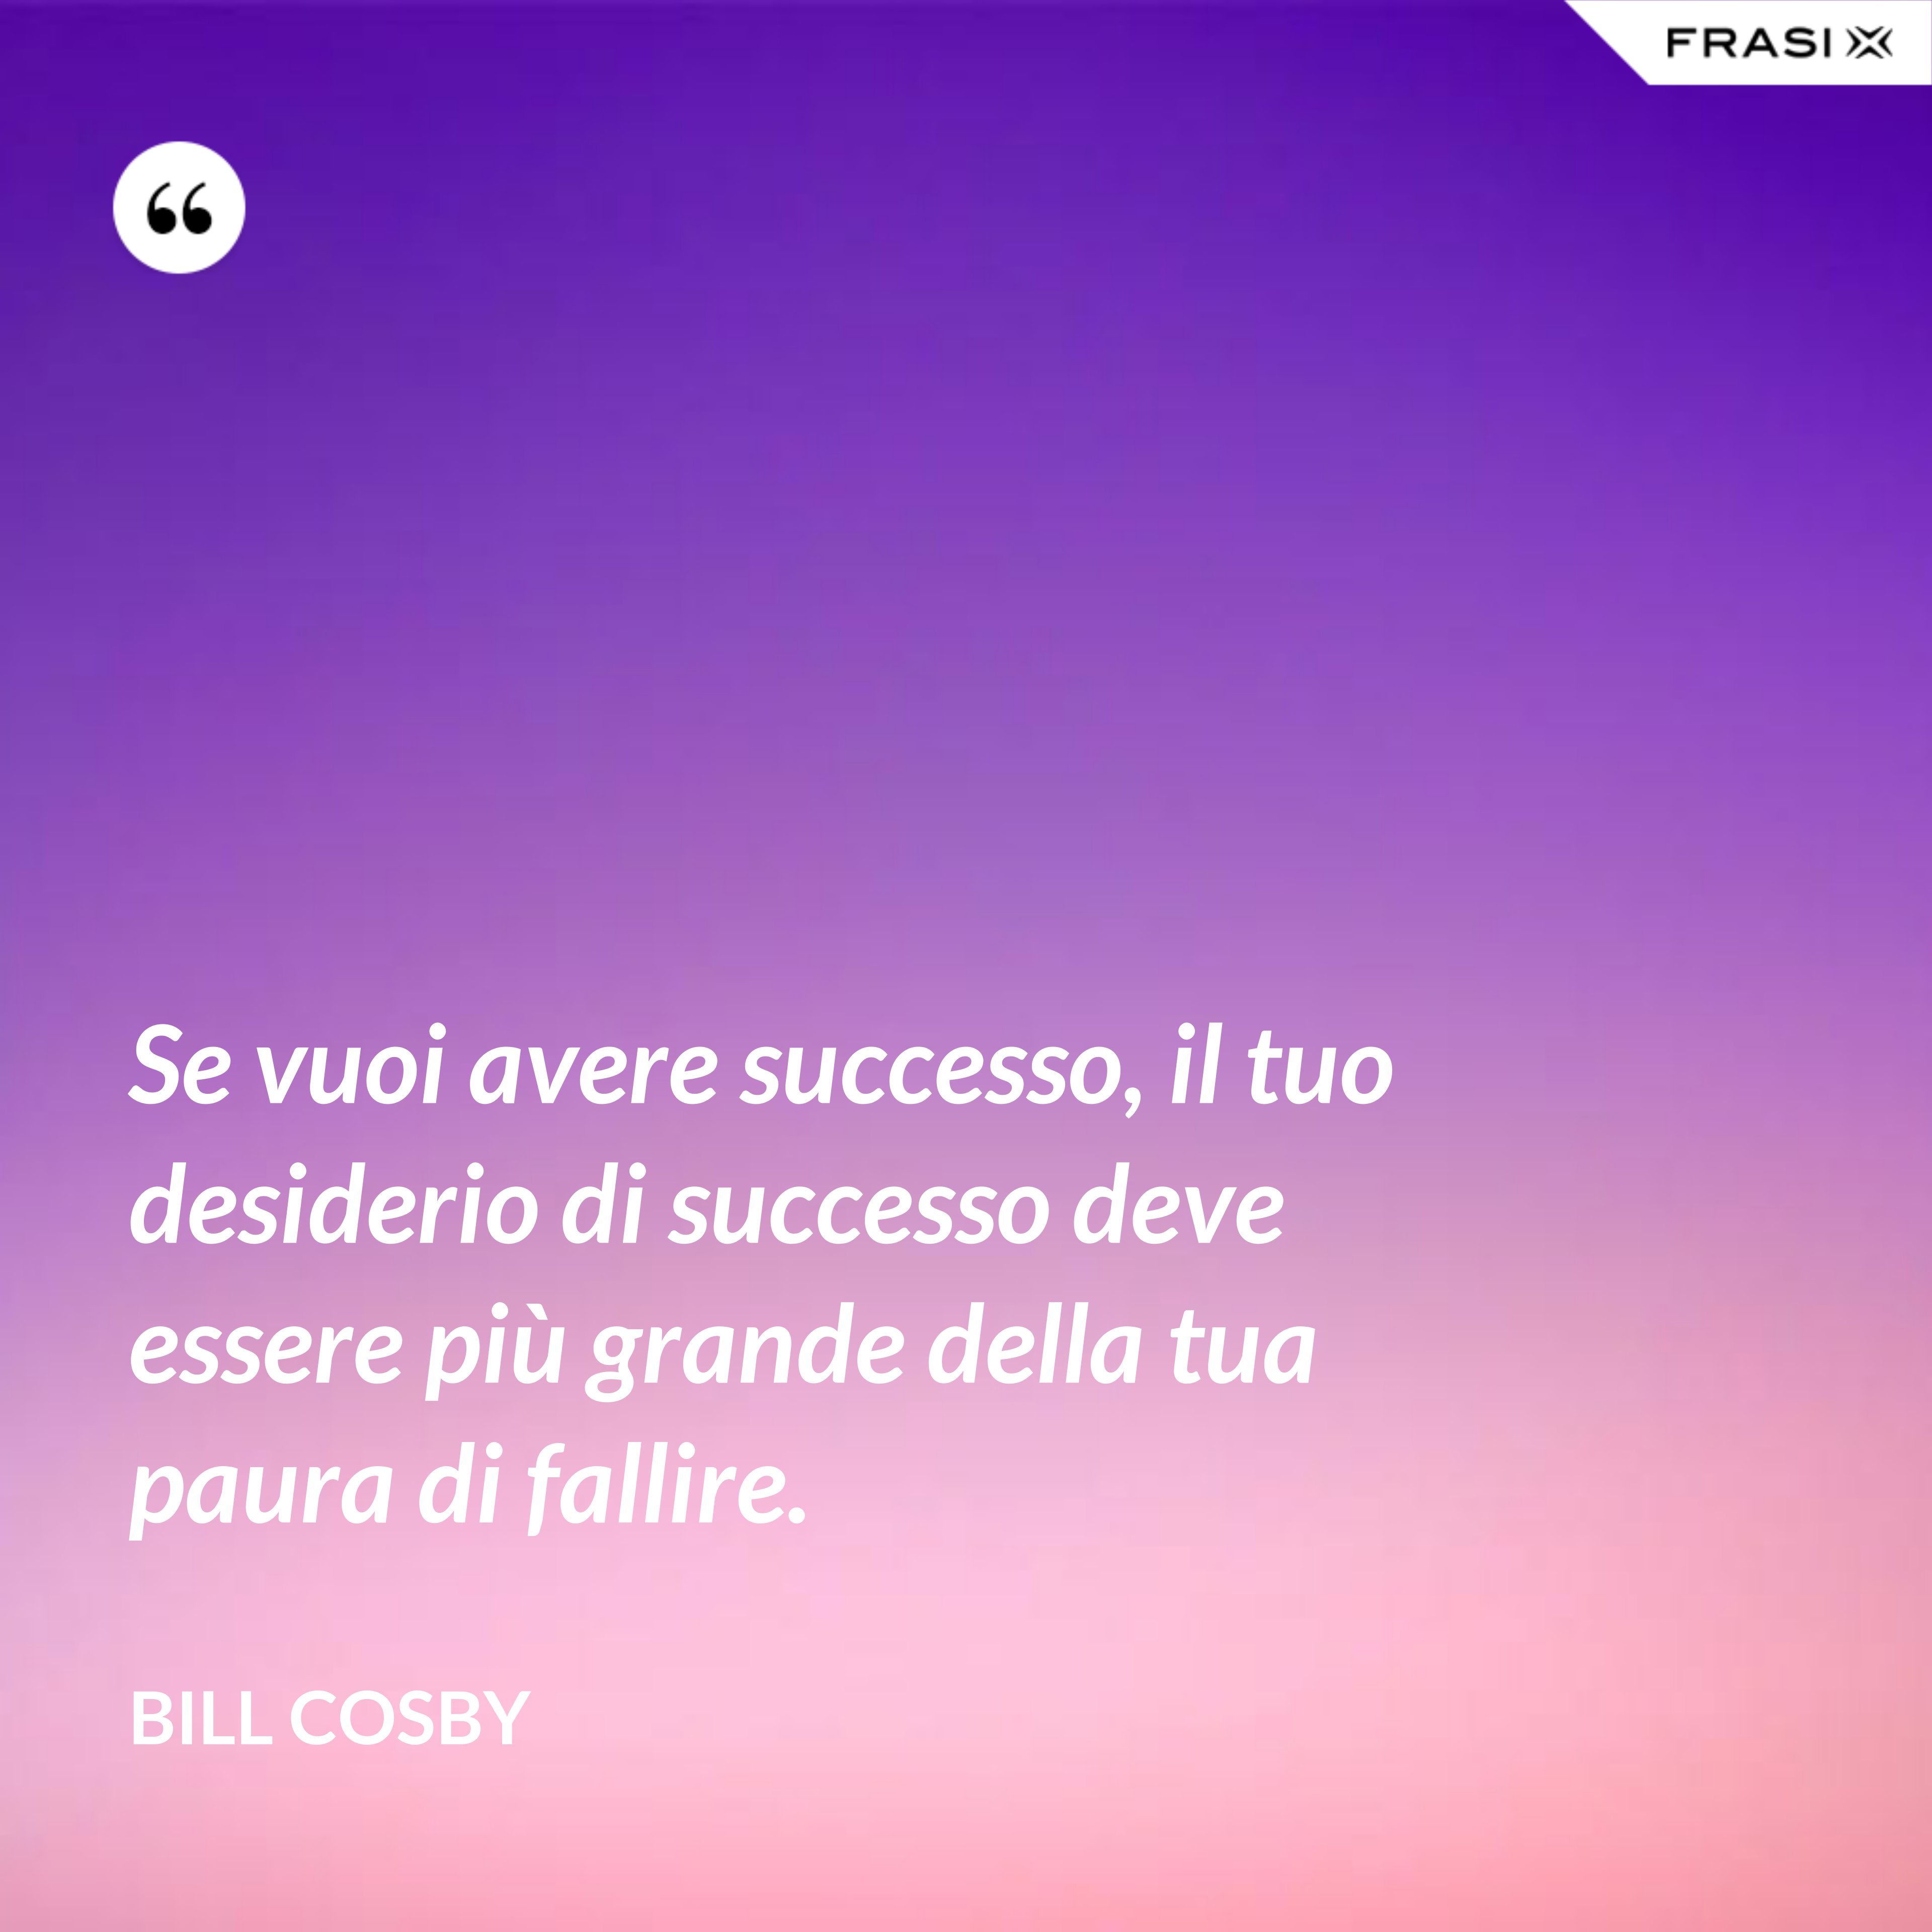 Se vuoi avere successo, il tuo desiderio di successo deve essere più grande della tua paura di fallire. - Bill Cosby